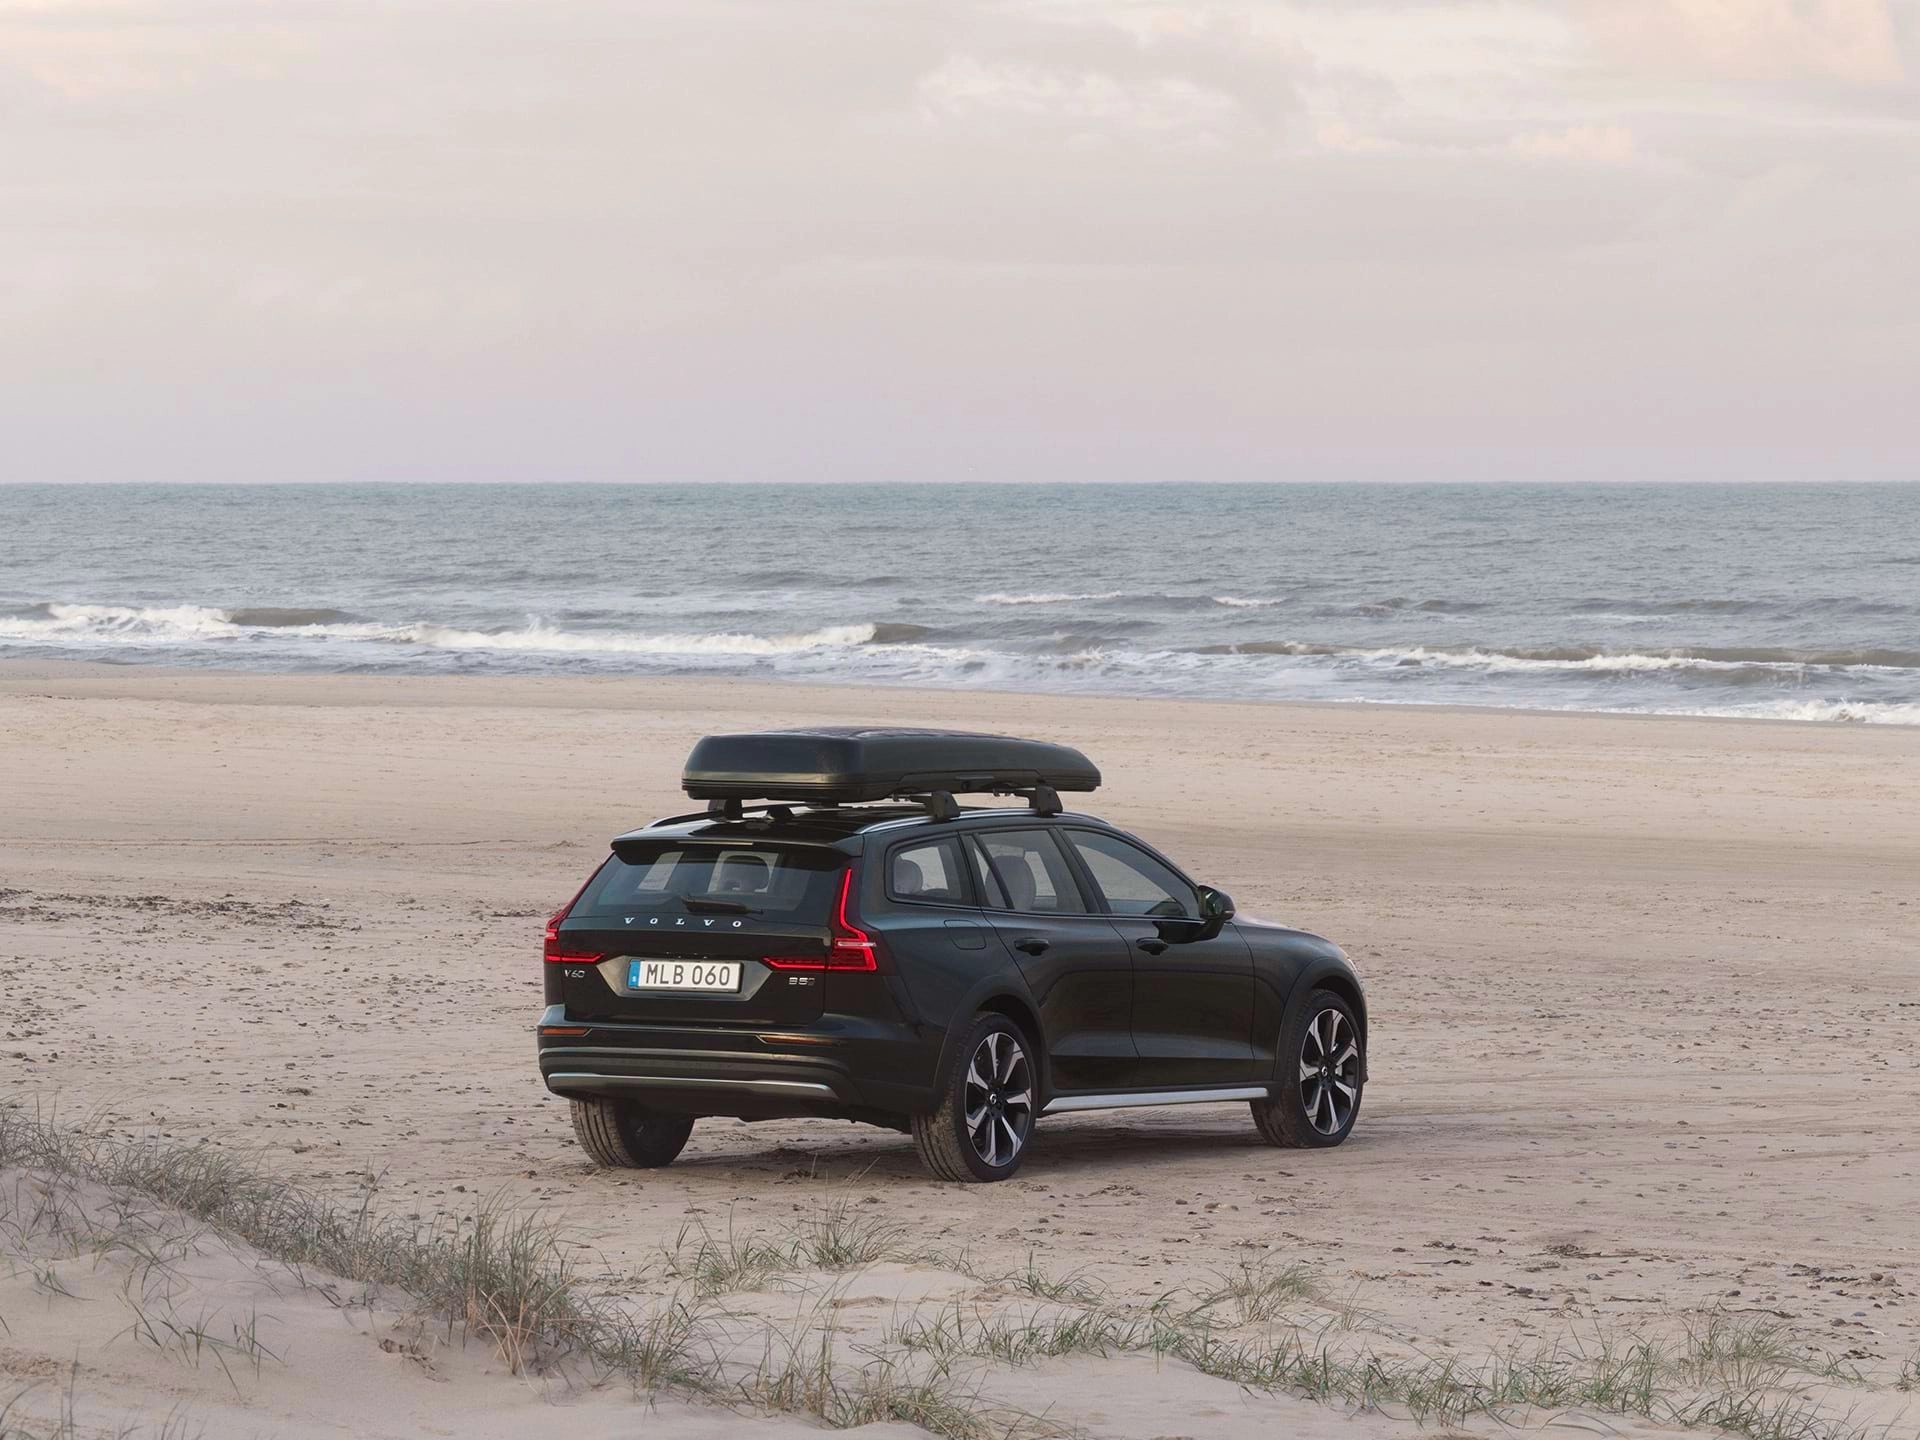 Una station wagon Volvo con box portacarico parcheggiata su una spiaggia sabbiosa.